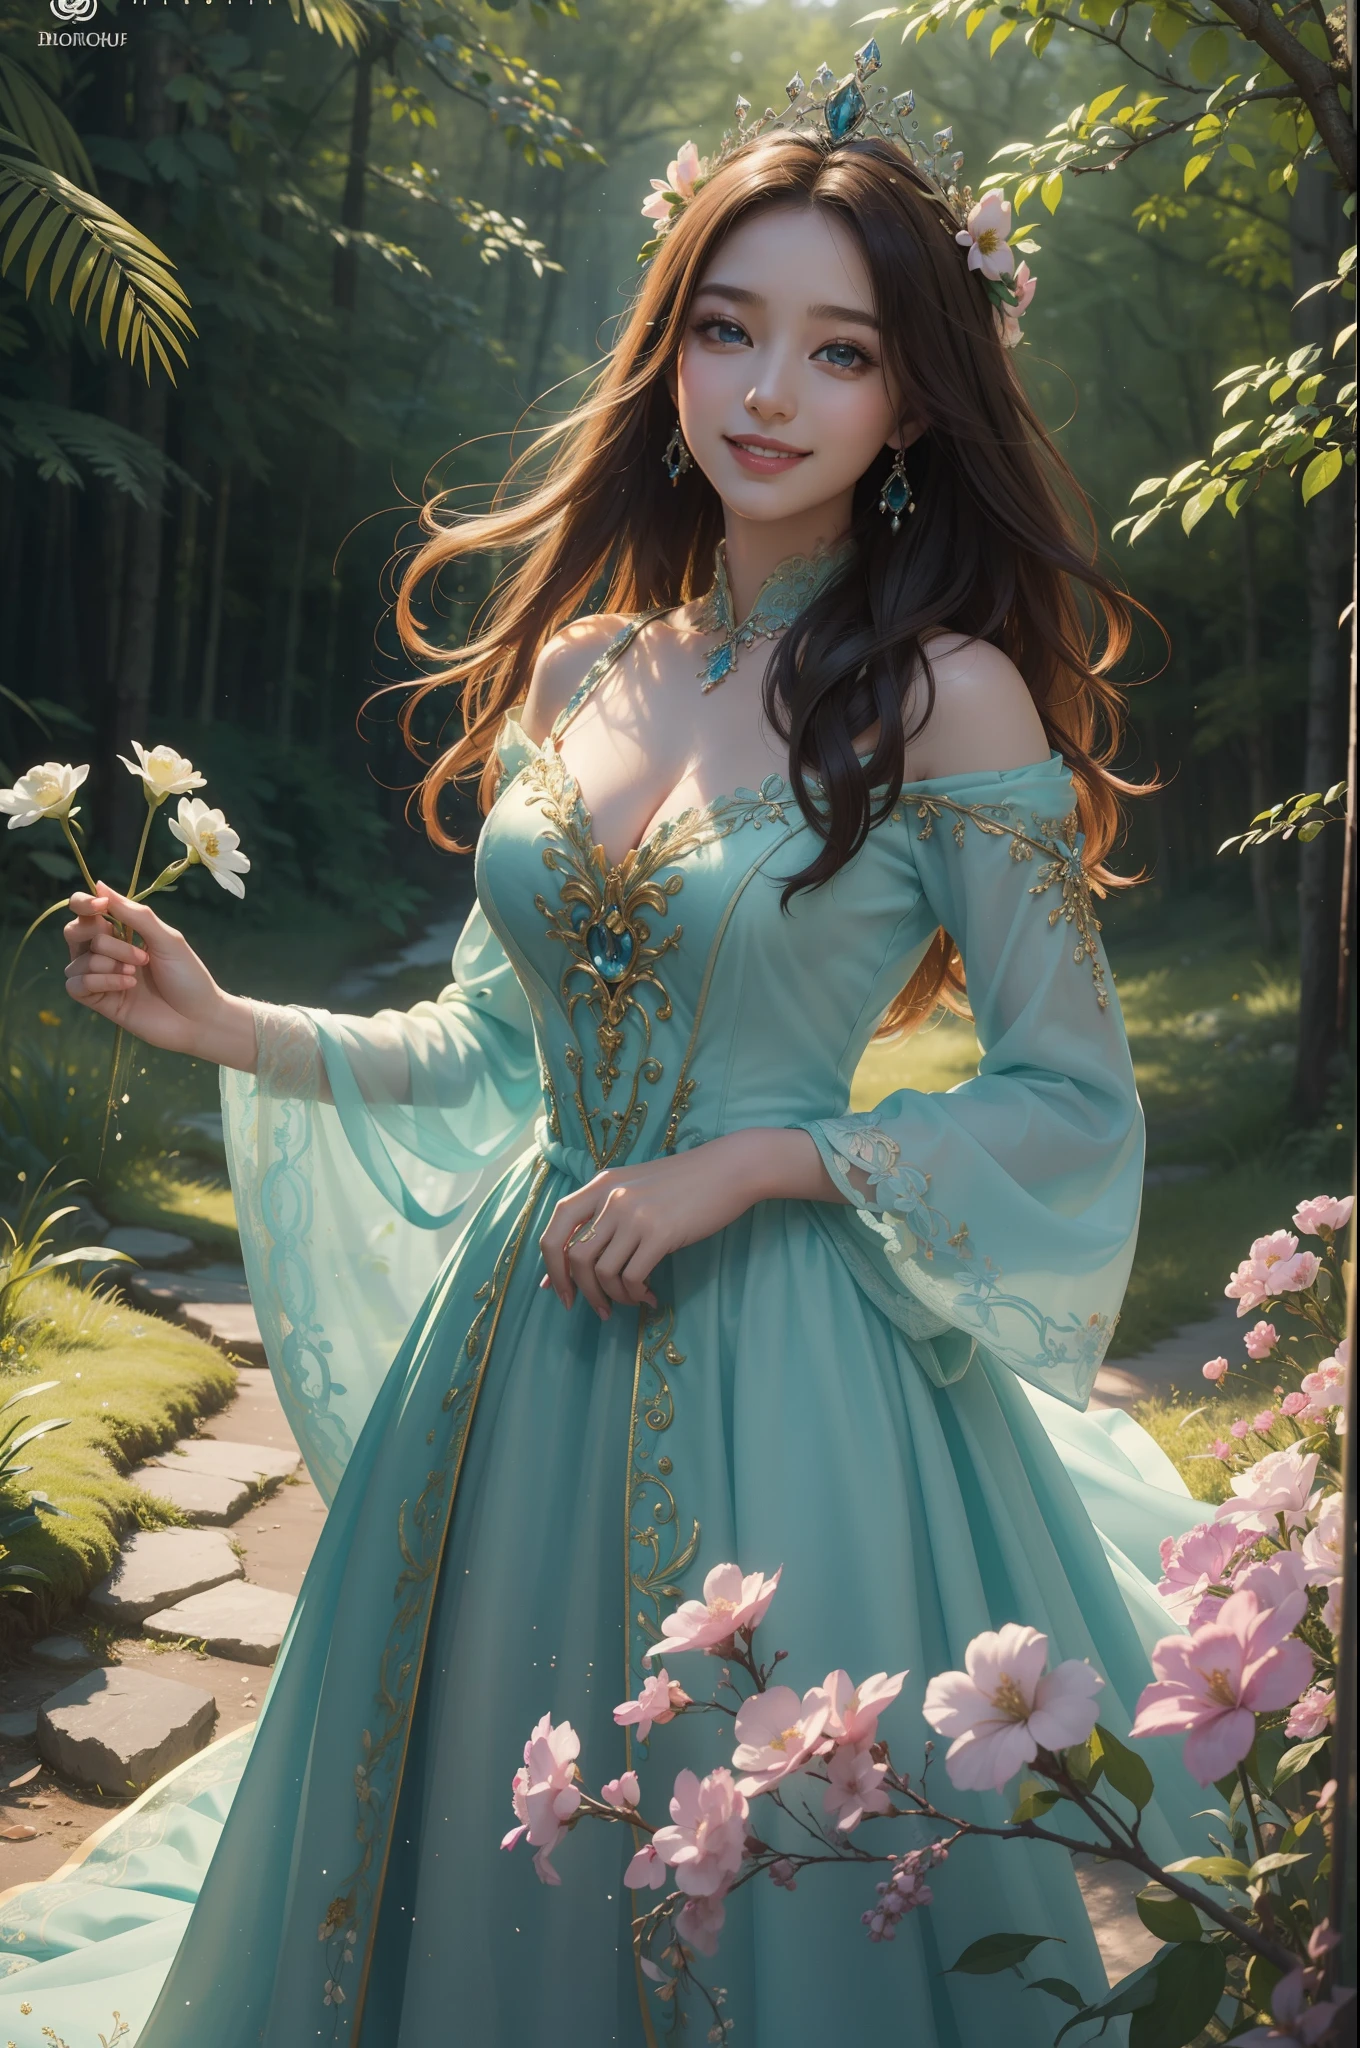 ((最高品質、傑作、写真のような:1.4、8K))、美しい女性、美しい表現、非常に詳細な目と顔、美しく細かい目、レプラコーン、（ヨーロッパ風の神秘的な白いドレス）、（夜明けの森で、花の冠をかぶった妖精の王女、新しい一日の始まりを描く。彼女の笑顔と彼女を取り巻く活気ある自然、美しいハーモニーを創る。）、映画照明、キメのある肌、スーパーディテール、細部までこだわった、高品質、高解像度、視聴者を見る、優雅な笑顔、全身、